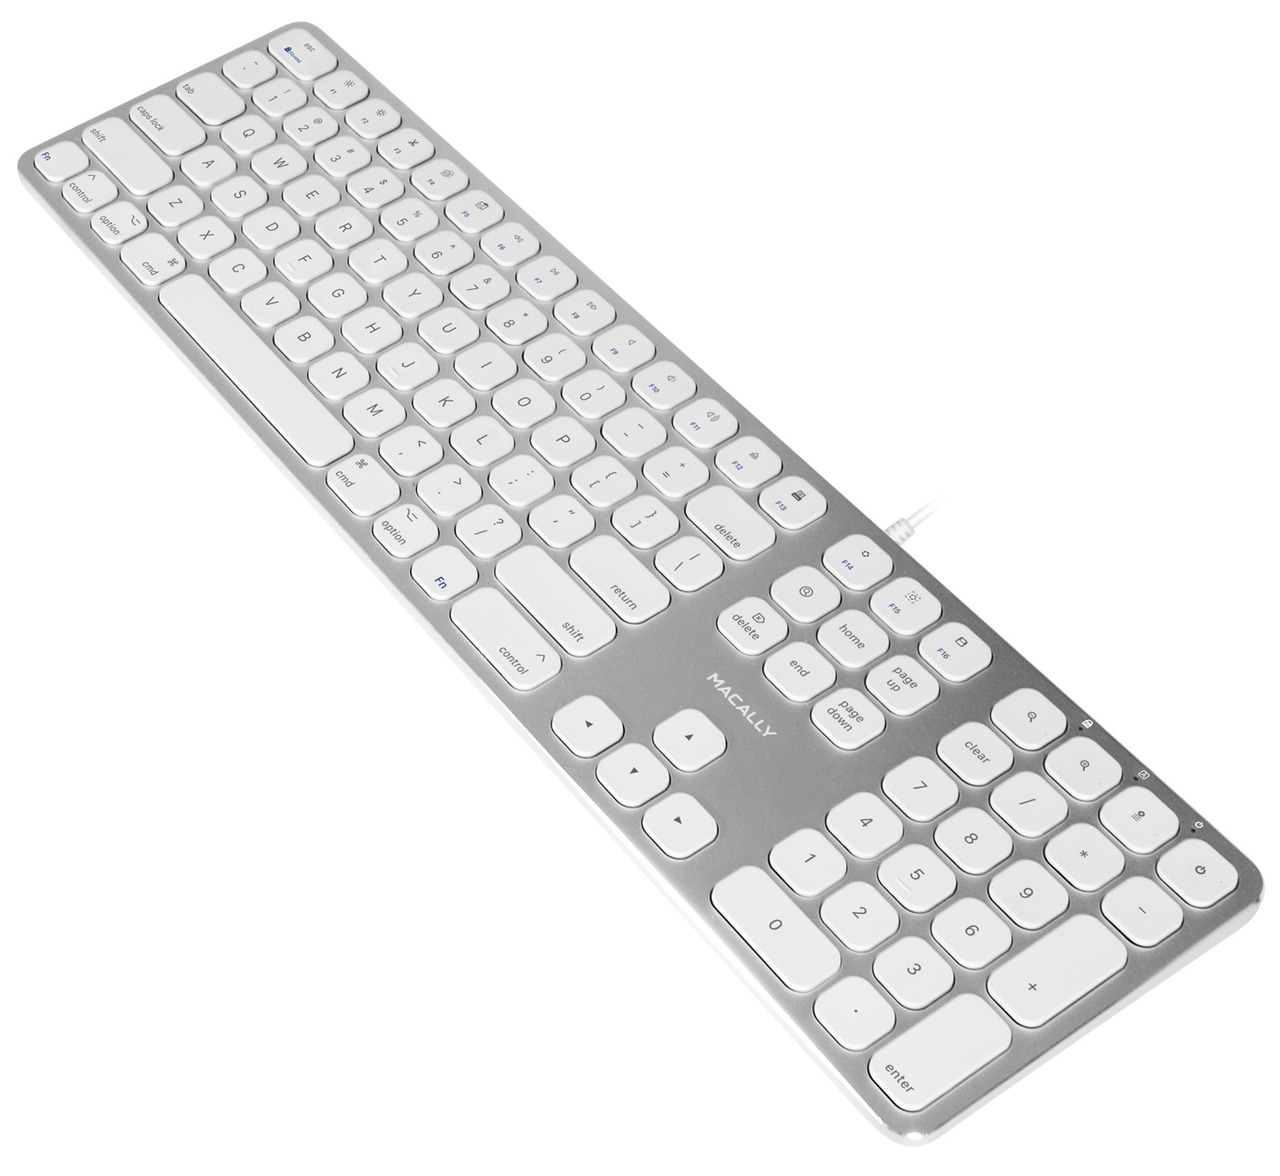 Macally MLUXKEYA bedraad aluminium toetsenbord met USB hub